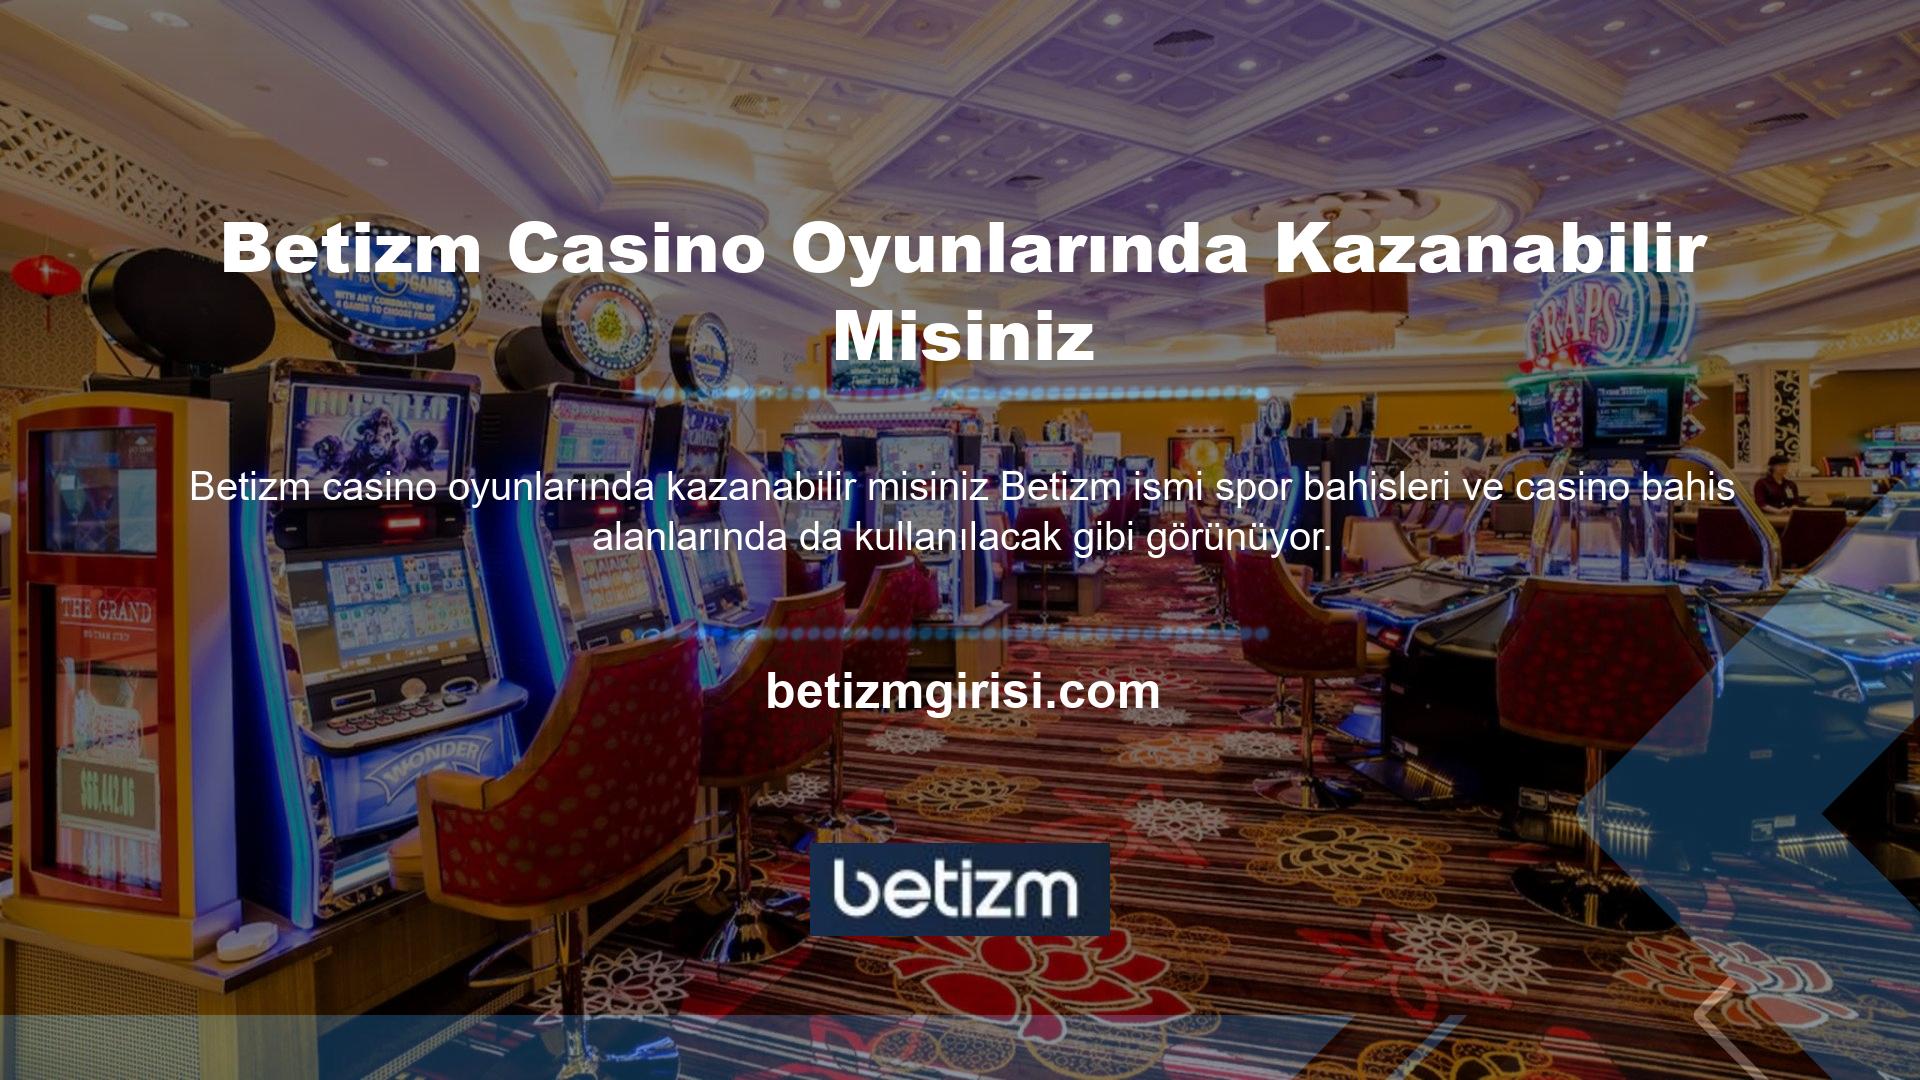 Spor bahisleri sağduyulu olduğundan Betizm casino oyunlarında kazanabileceğiniz gibi bu kazanma sorunu da doğrudan casinolar için geçerlidir